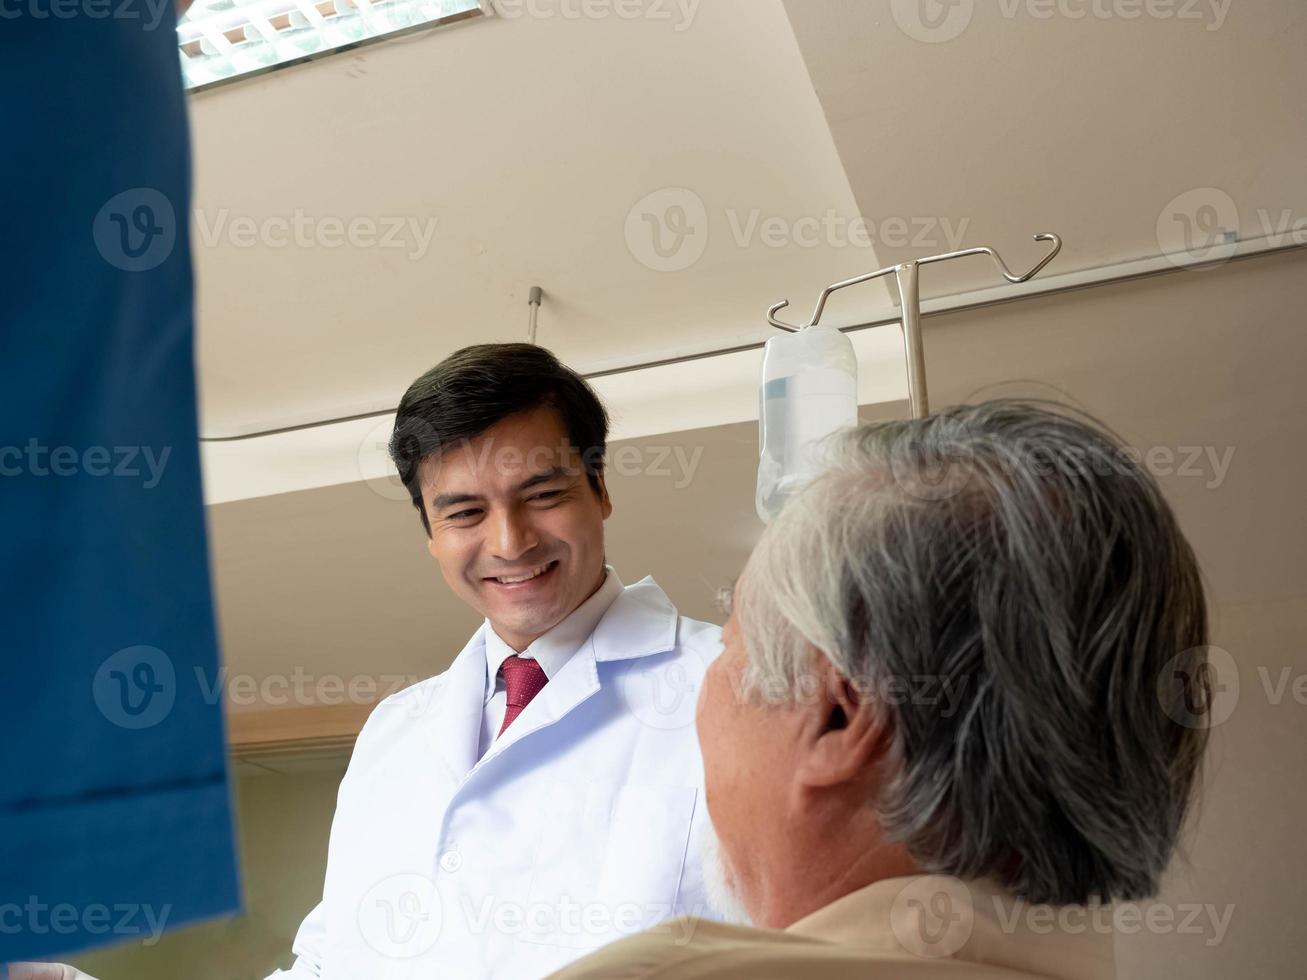 krankenhaus klinik oder laborarzt wissenschaftler männlich tragen weiße uniform glückliches lächeln service sucht und diskutiert patientenbehandlung gesundheitswesen grippe krankheit covid-19 corona virus krankheit foto